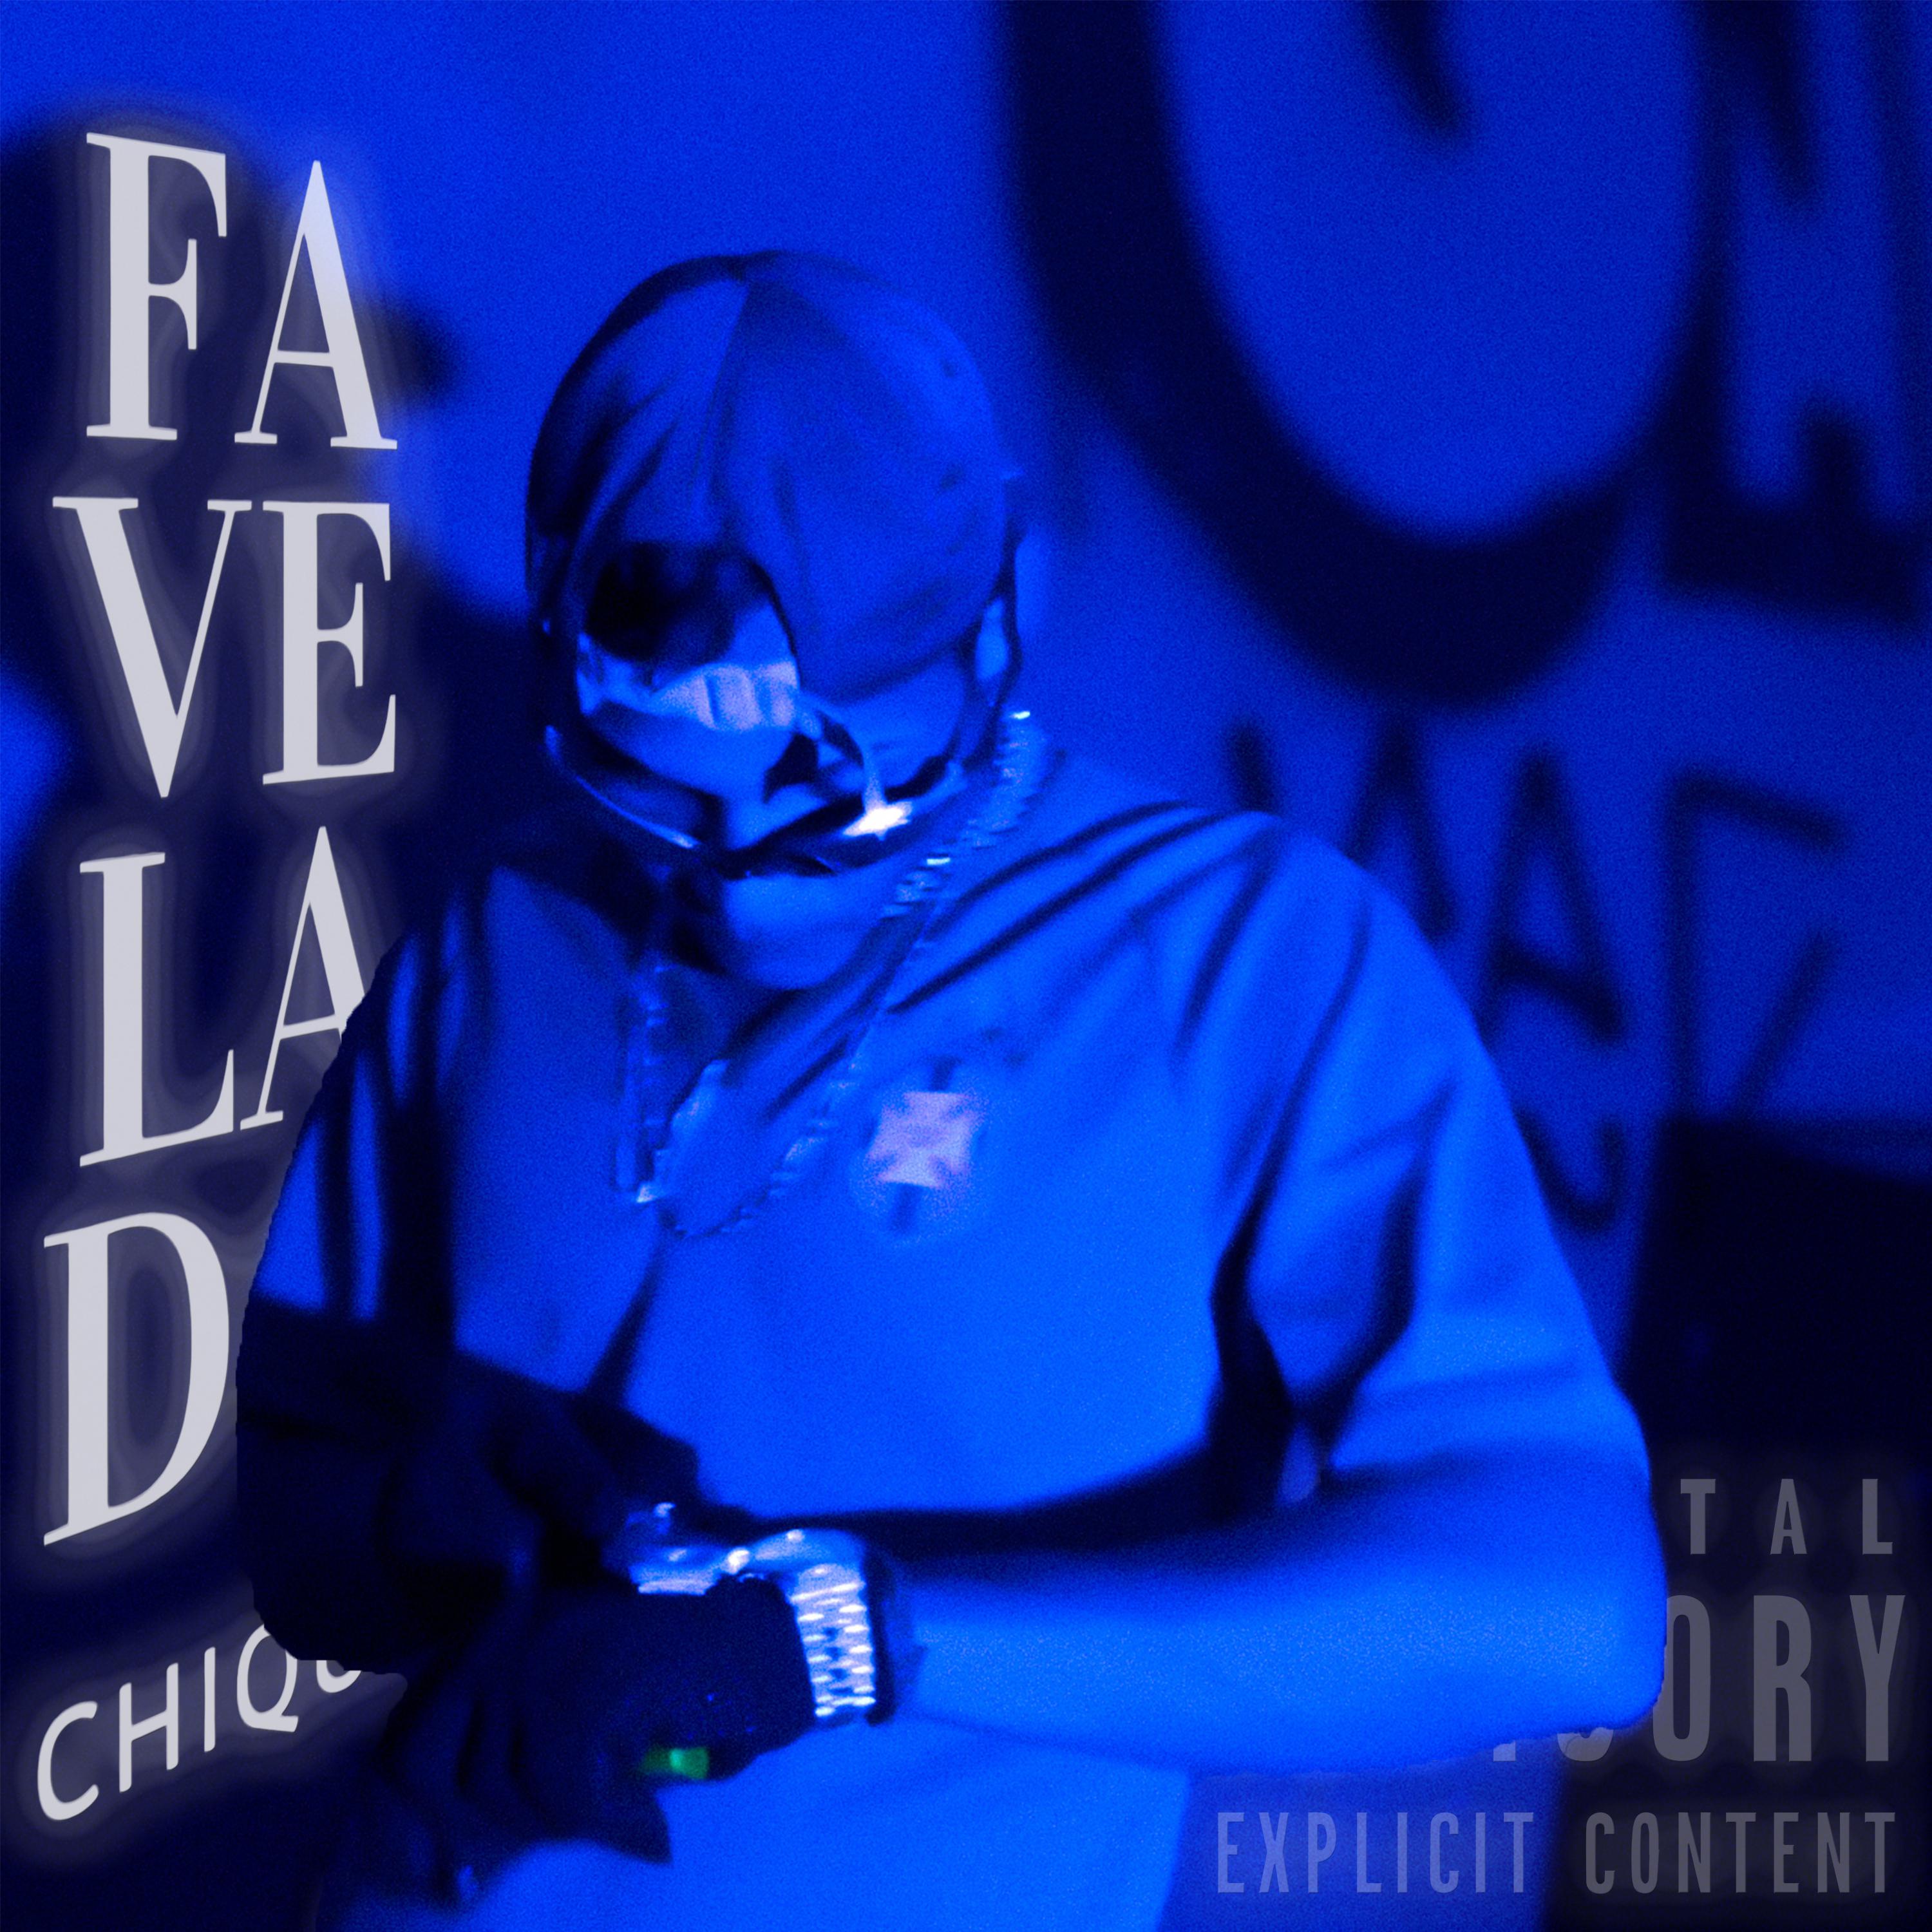 Постер альбома Favelado Chique